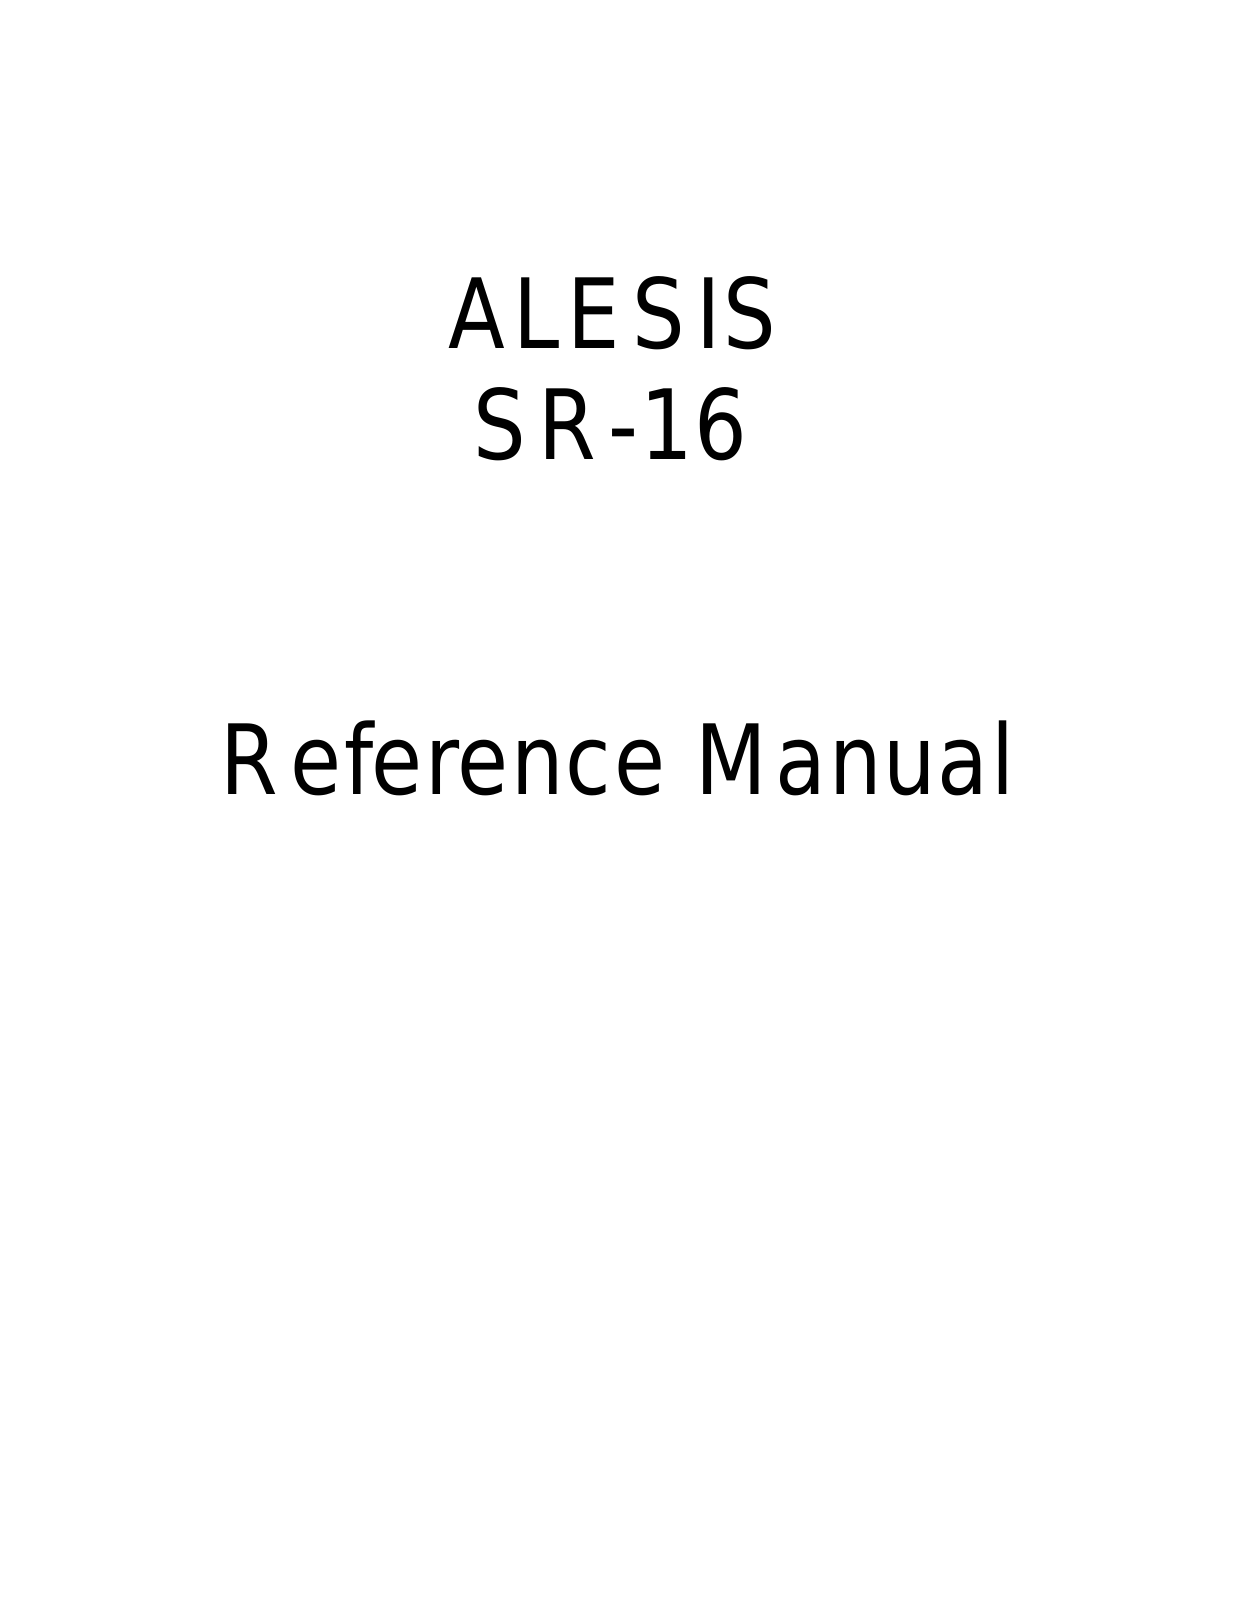 ALESIS SR-16 User Manual